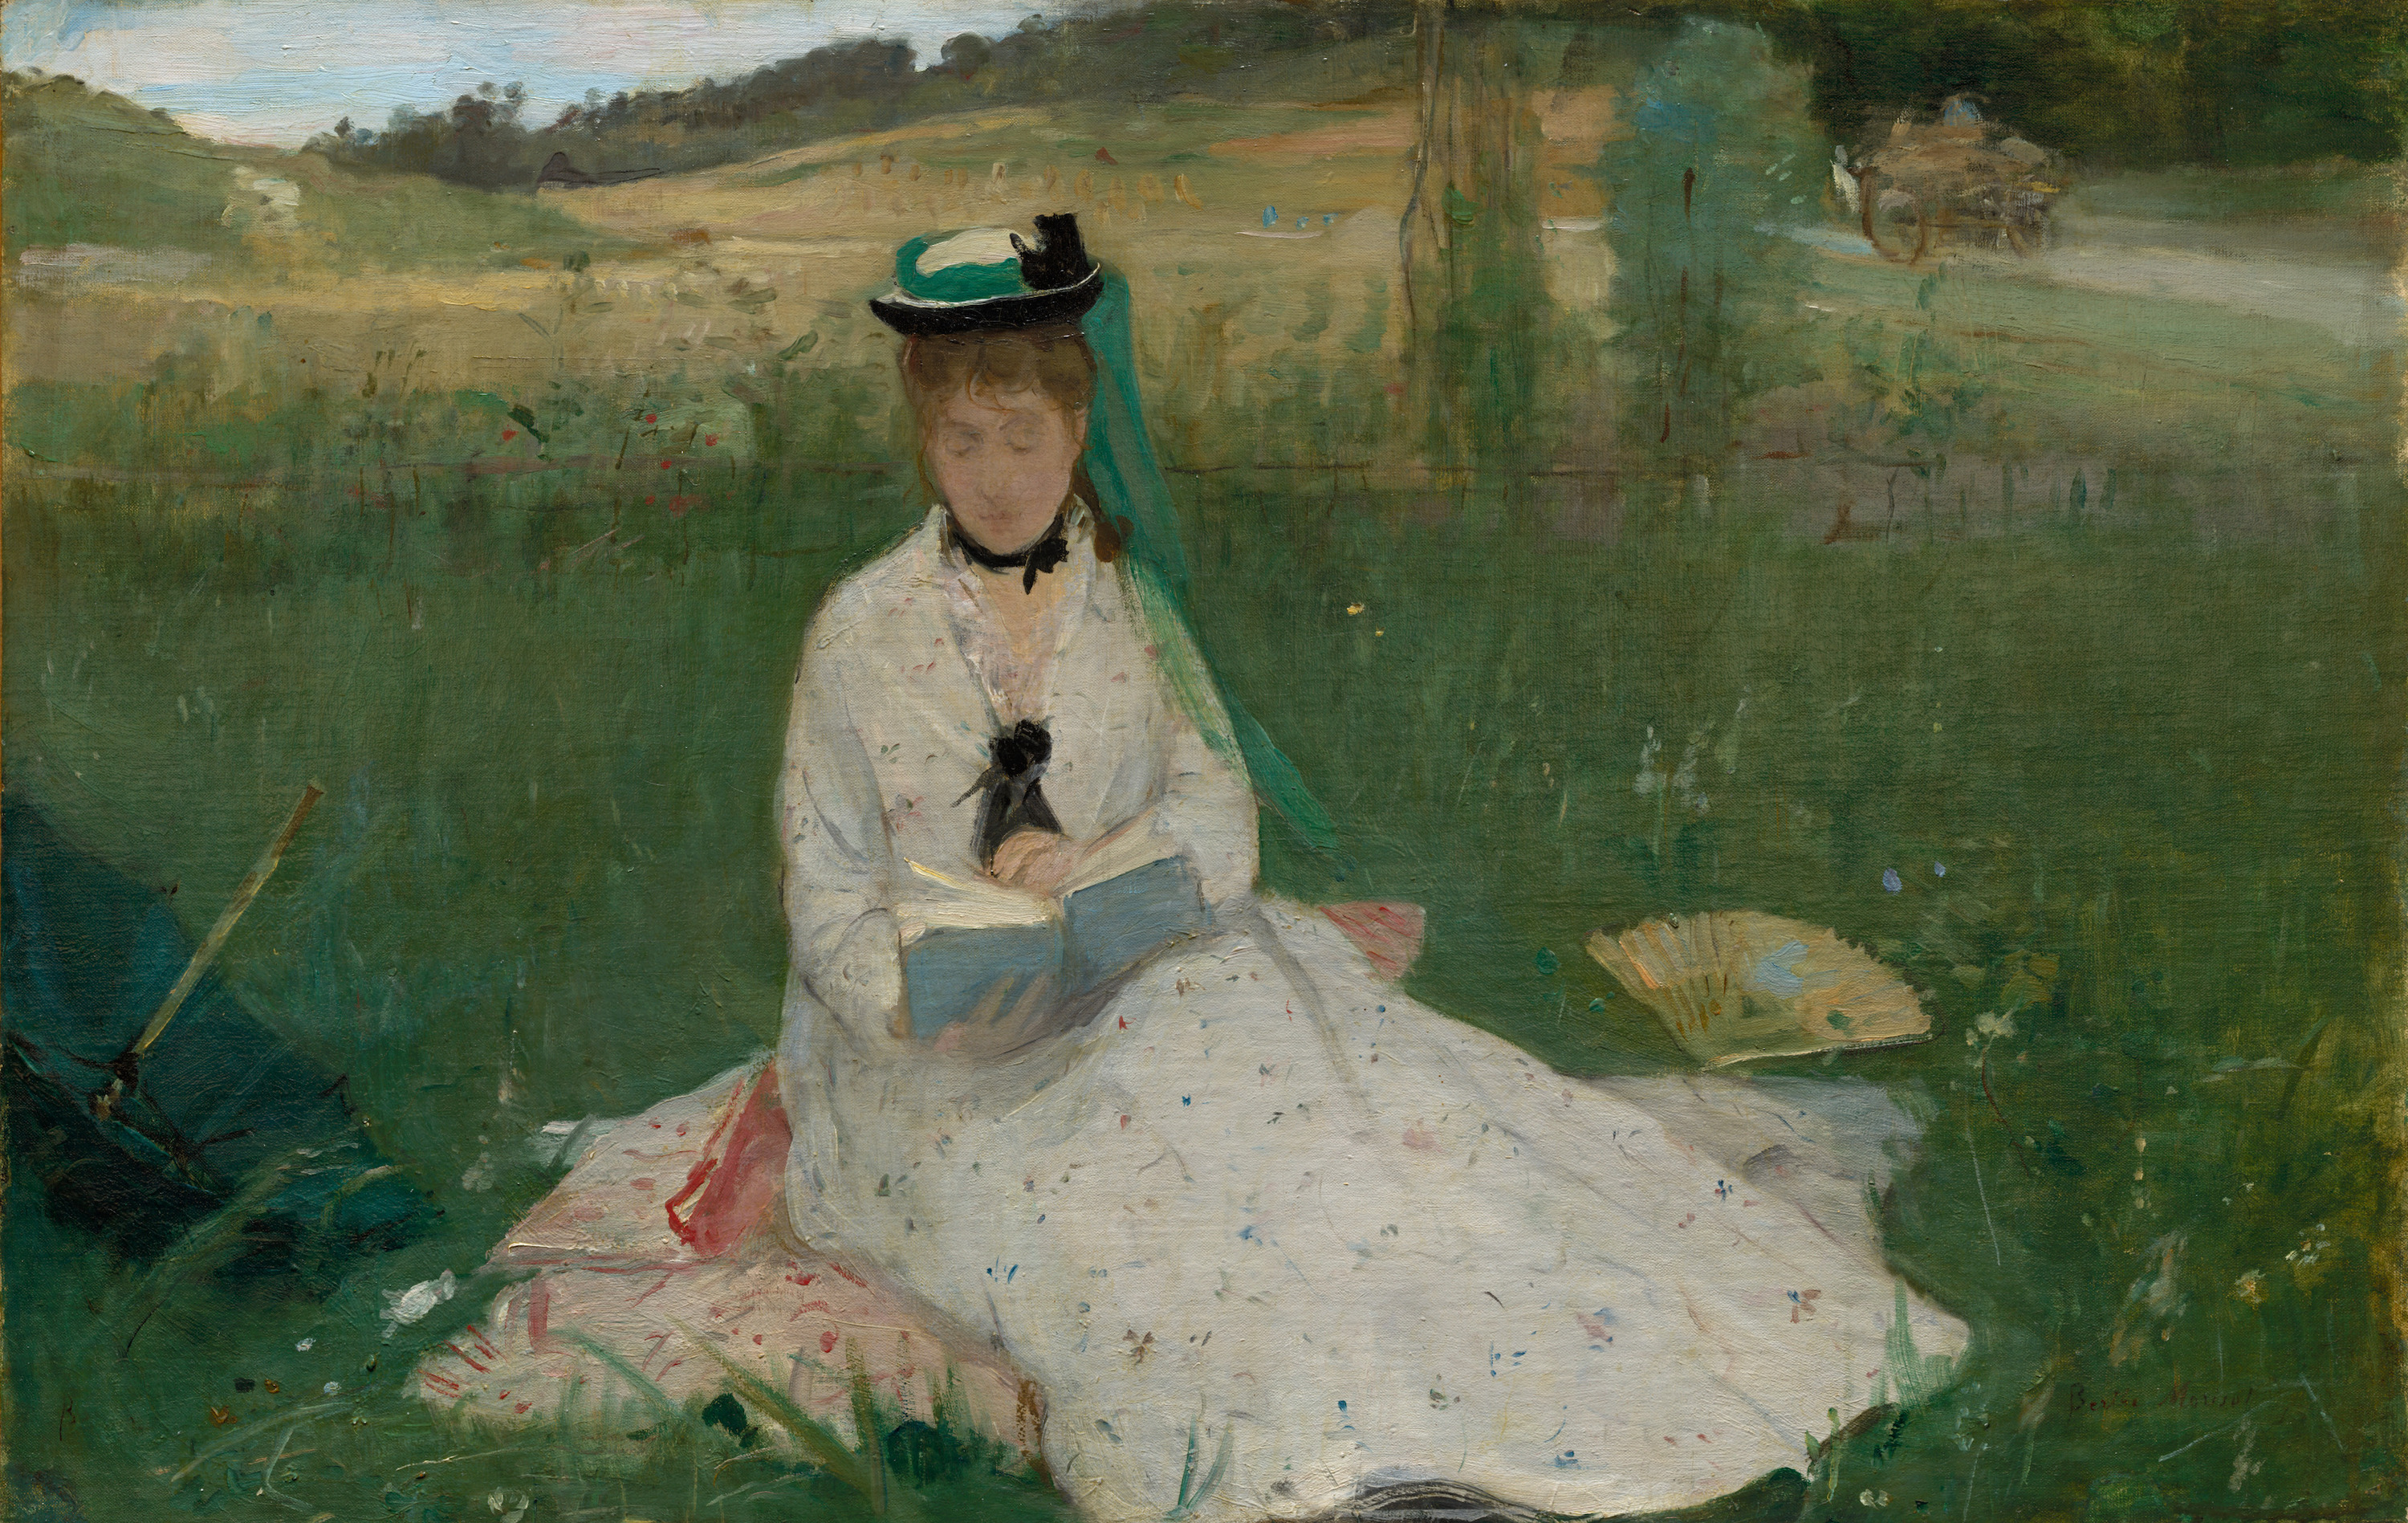 Lesen by Berthe Morisot - 1873 - 74,3 cm x 100,3 cm Cleveland Museum of Art